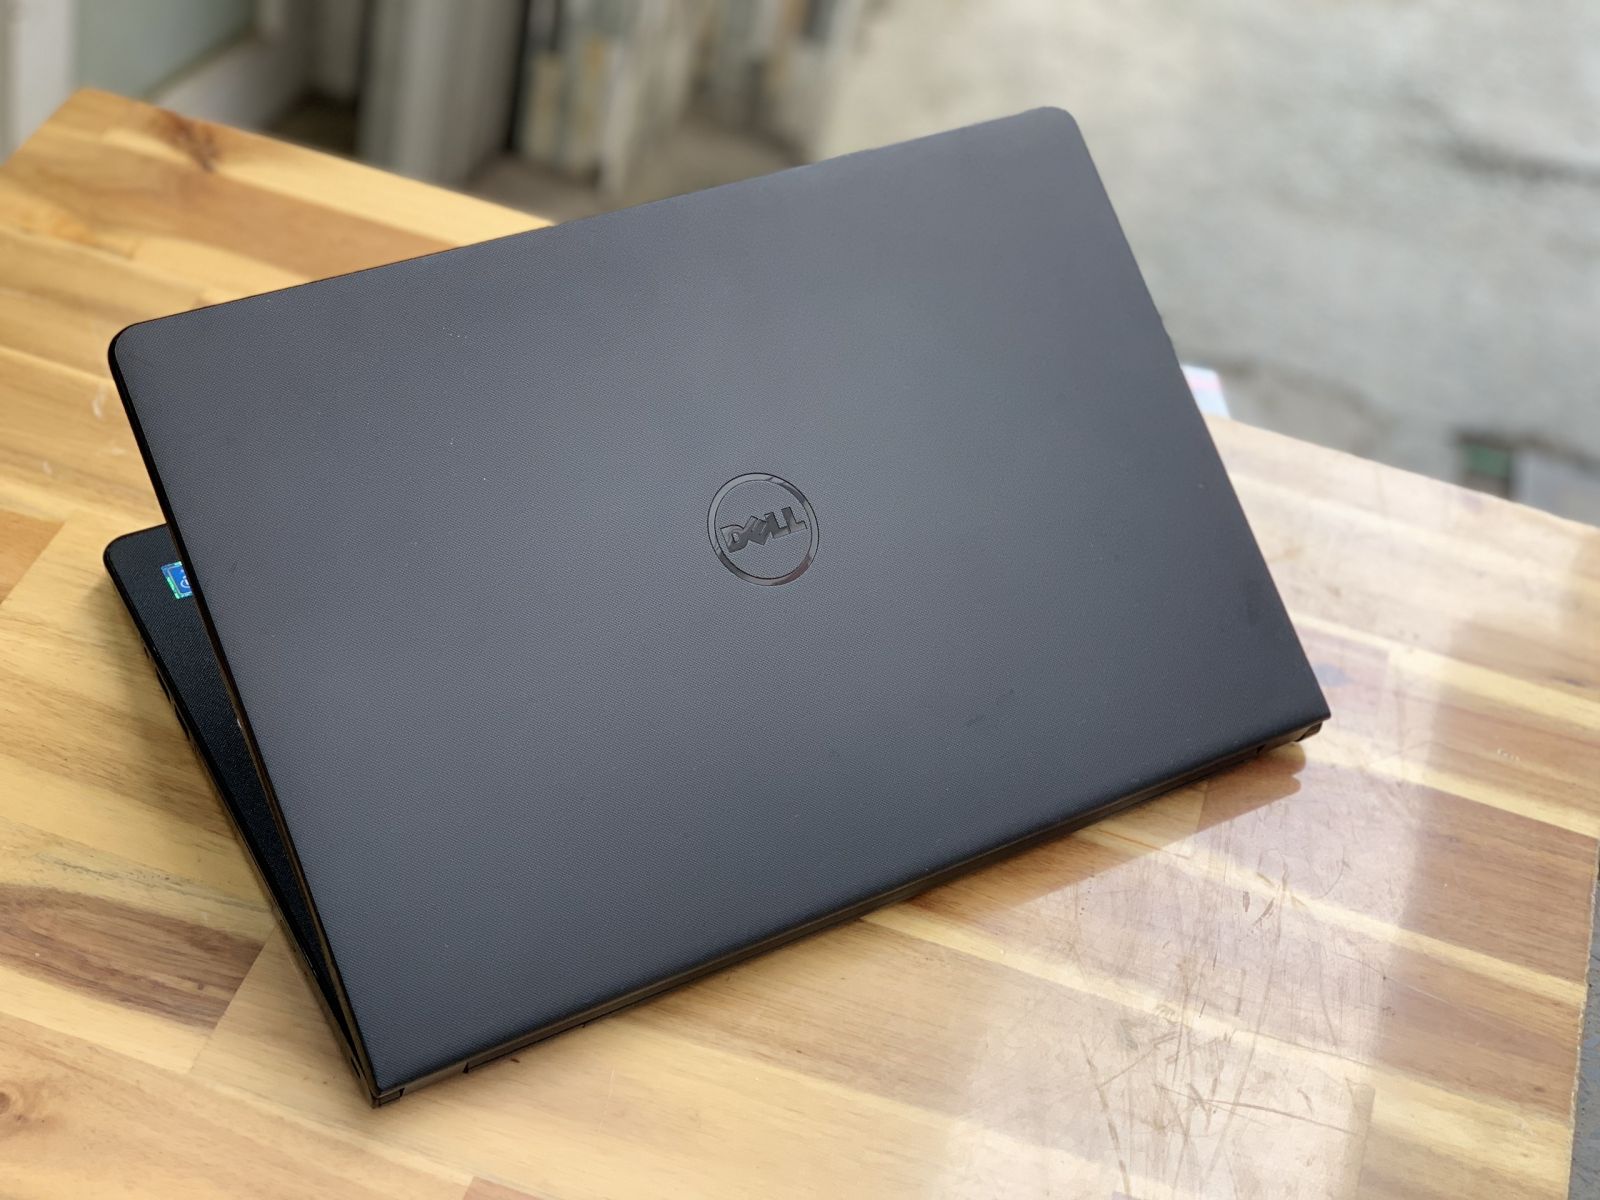 Laptop Dell Inspiron 5558, i7 5500U 8G 128+500G Vga rời 4G Đèn phím Đẹp zin 100% Giá rẻ